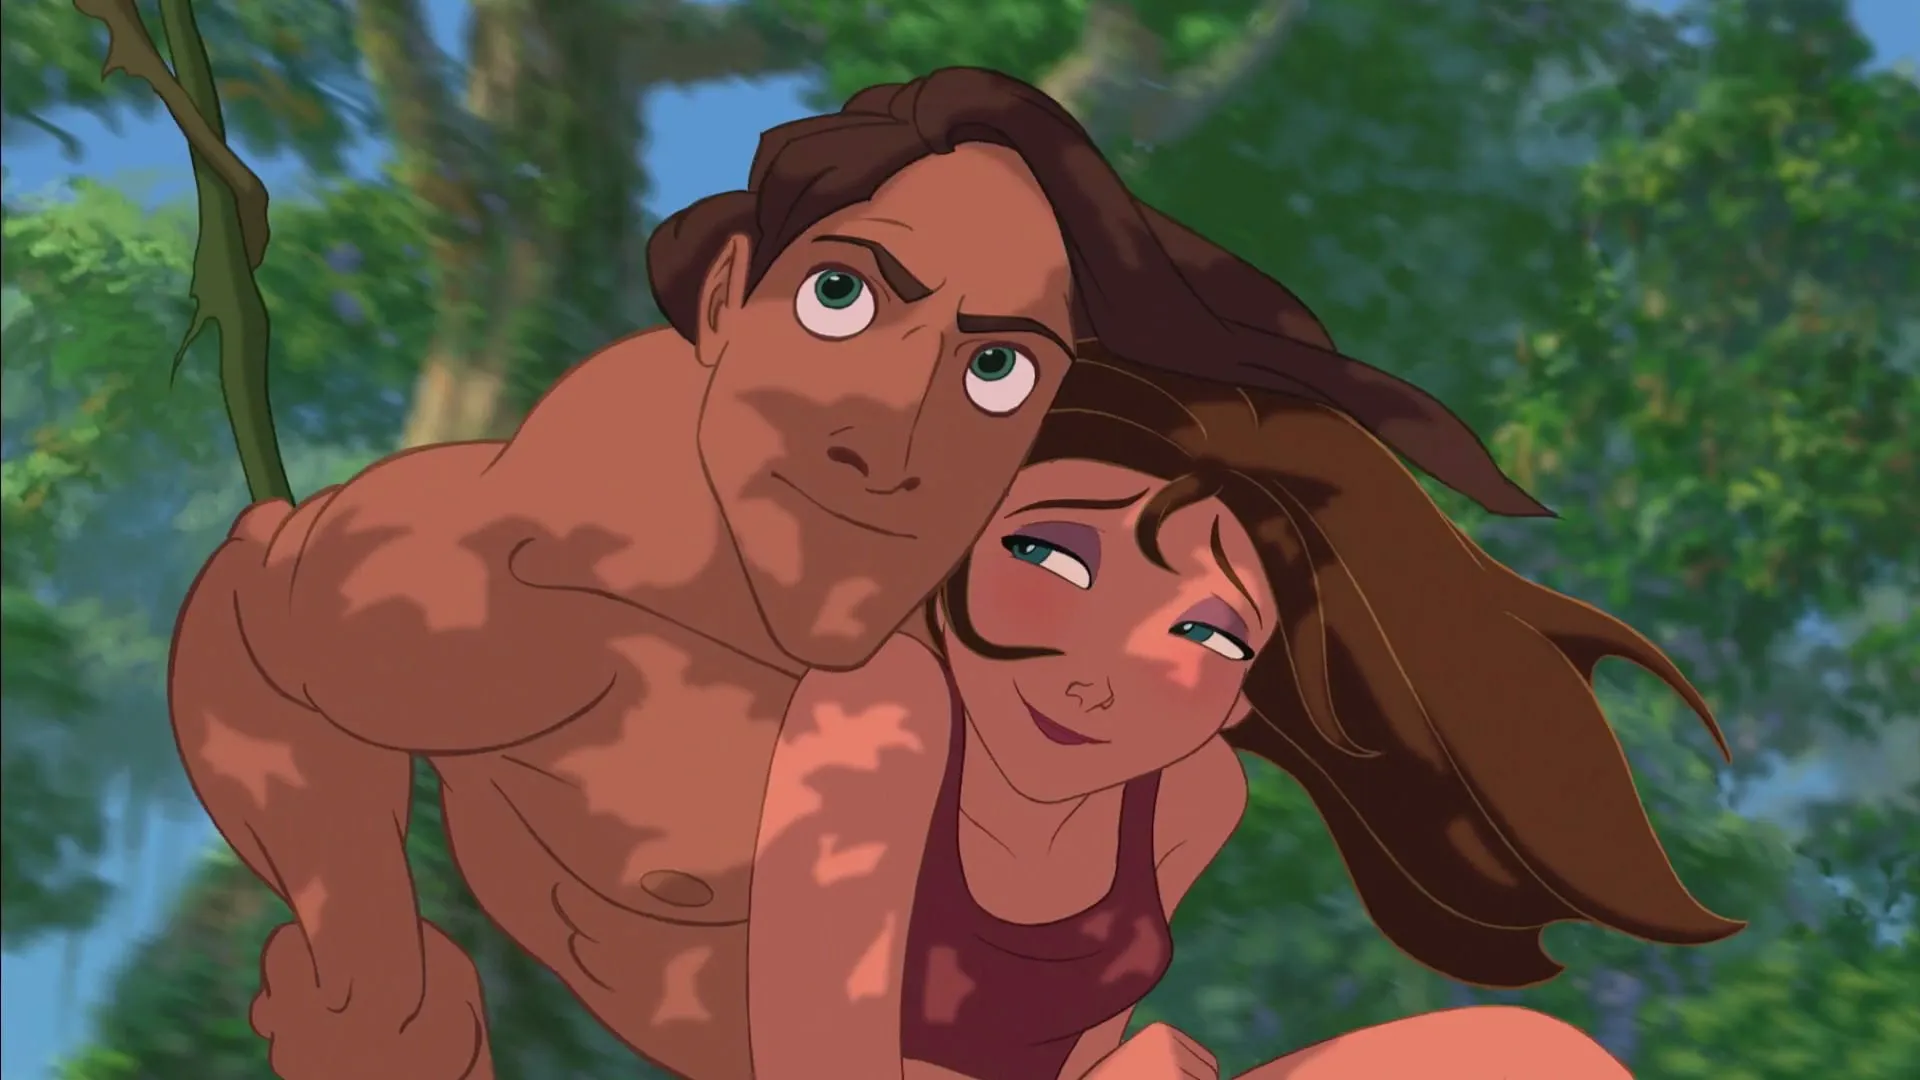 Cena da animação "Tarzan" (1999)